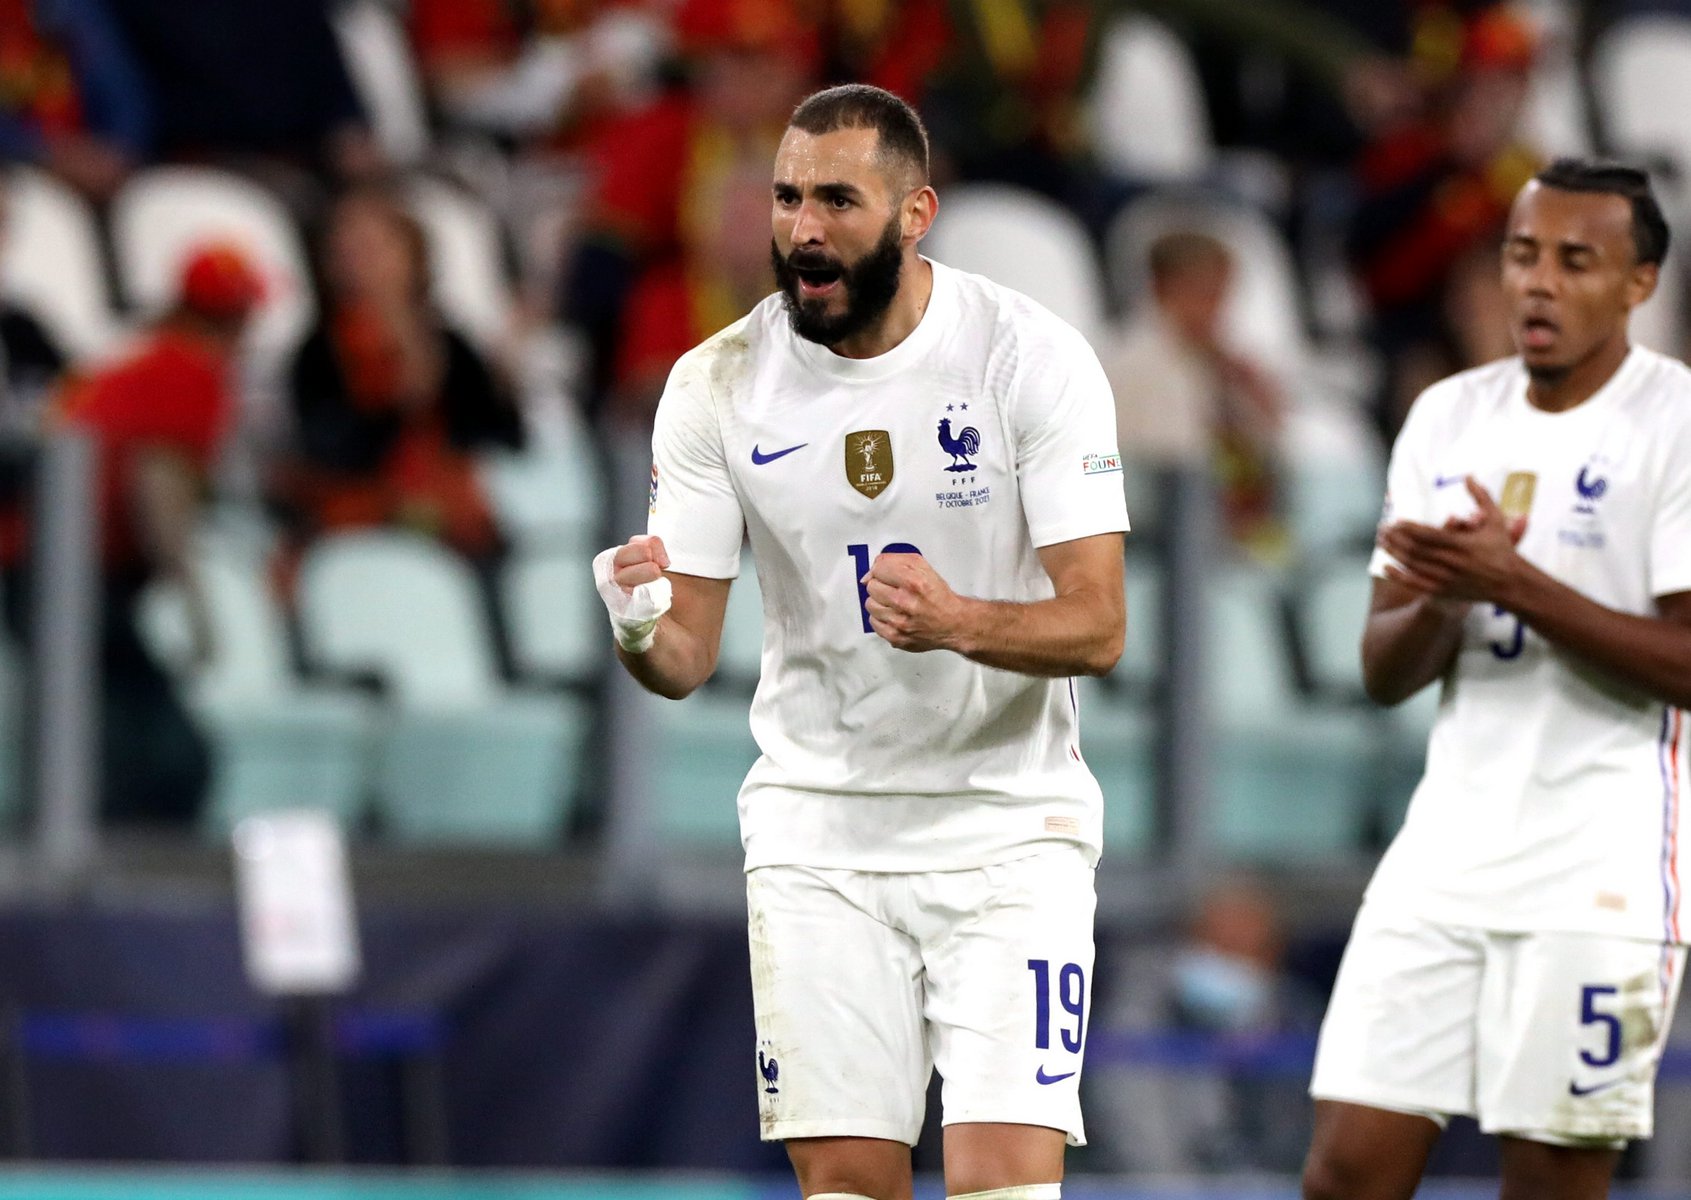 Κακός χαμός με τον Benzema στη Γαλλία: Μπορούσε τελικά να παίξει στο Μουντιάλ – Συμμαχία Γάλλων παικτών για να τον «φάνε»